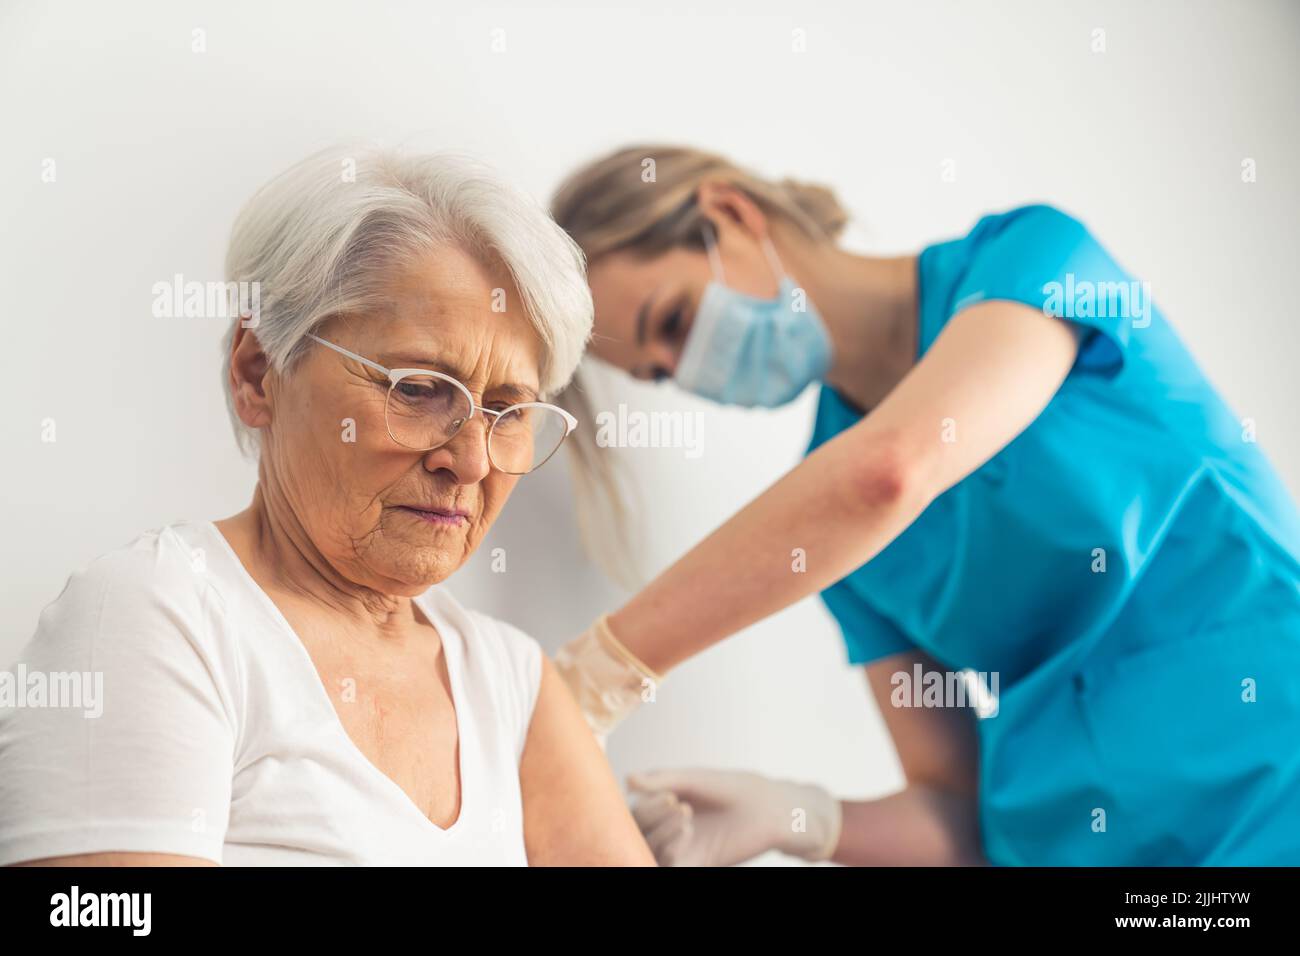 Giovane infermiera che fa l'iniezione di farmaco o vaccino anti-covid ad una donna anziana con capelli grigi all'ospedale. Foto di alta qualità Foto Stock